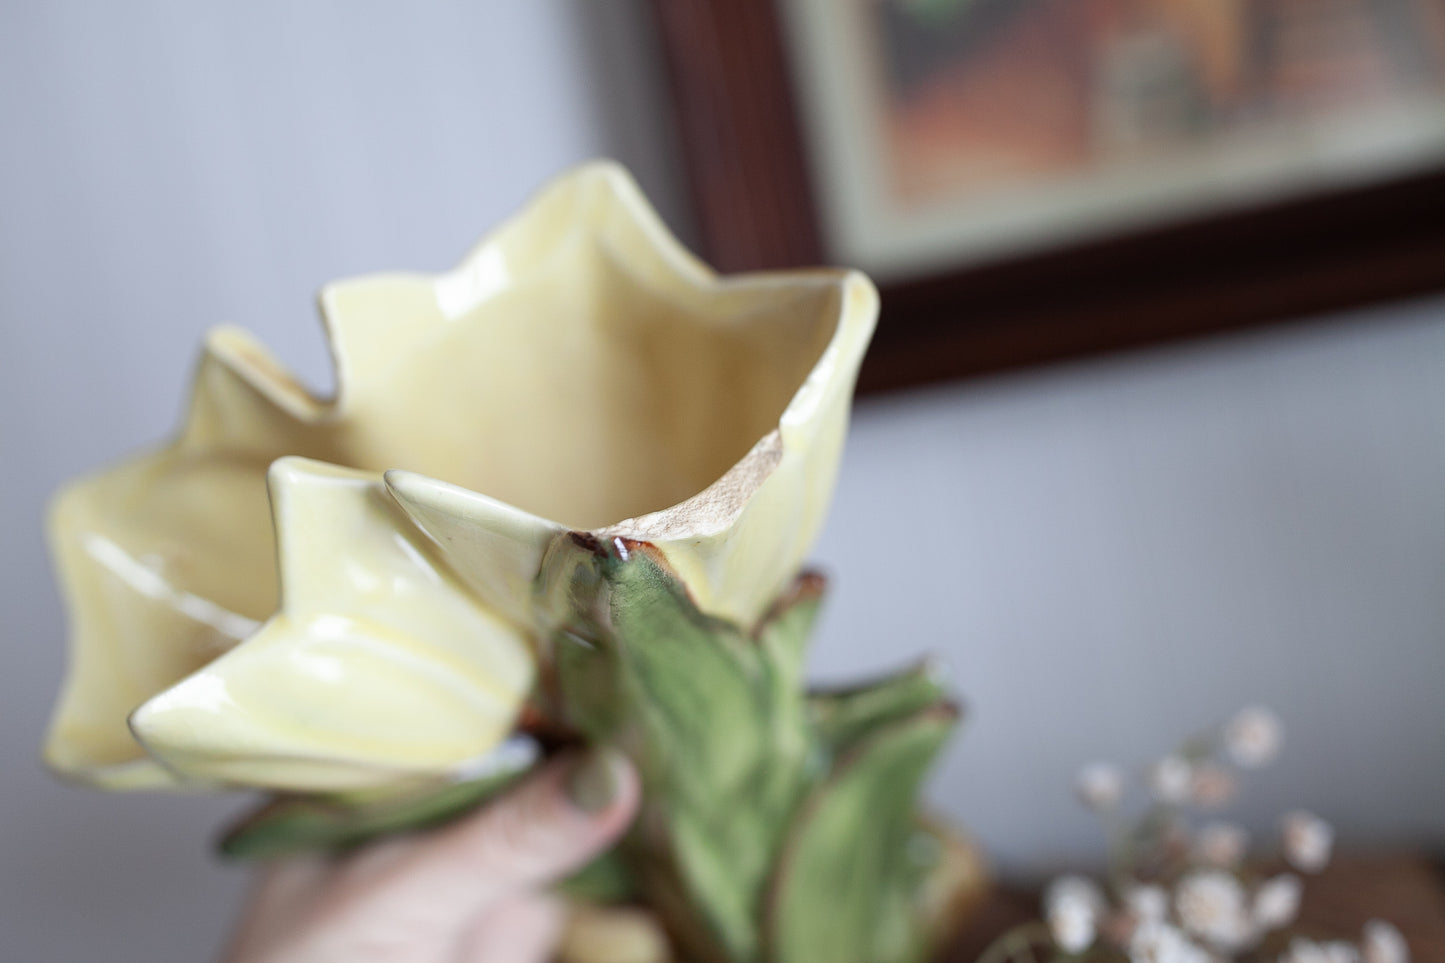 Vintage McCoy Tulip Vase - Flower McCoy